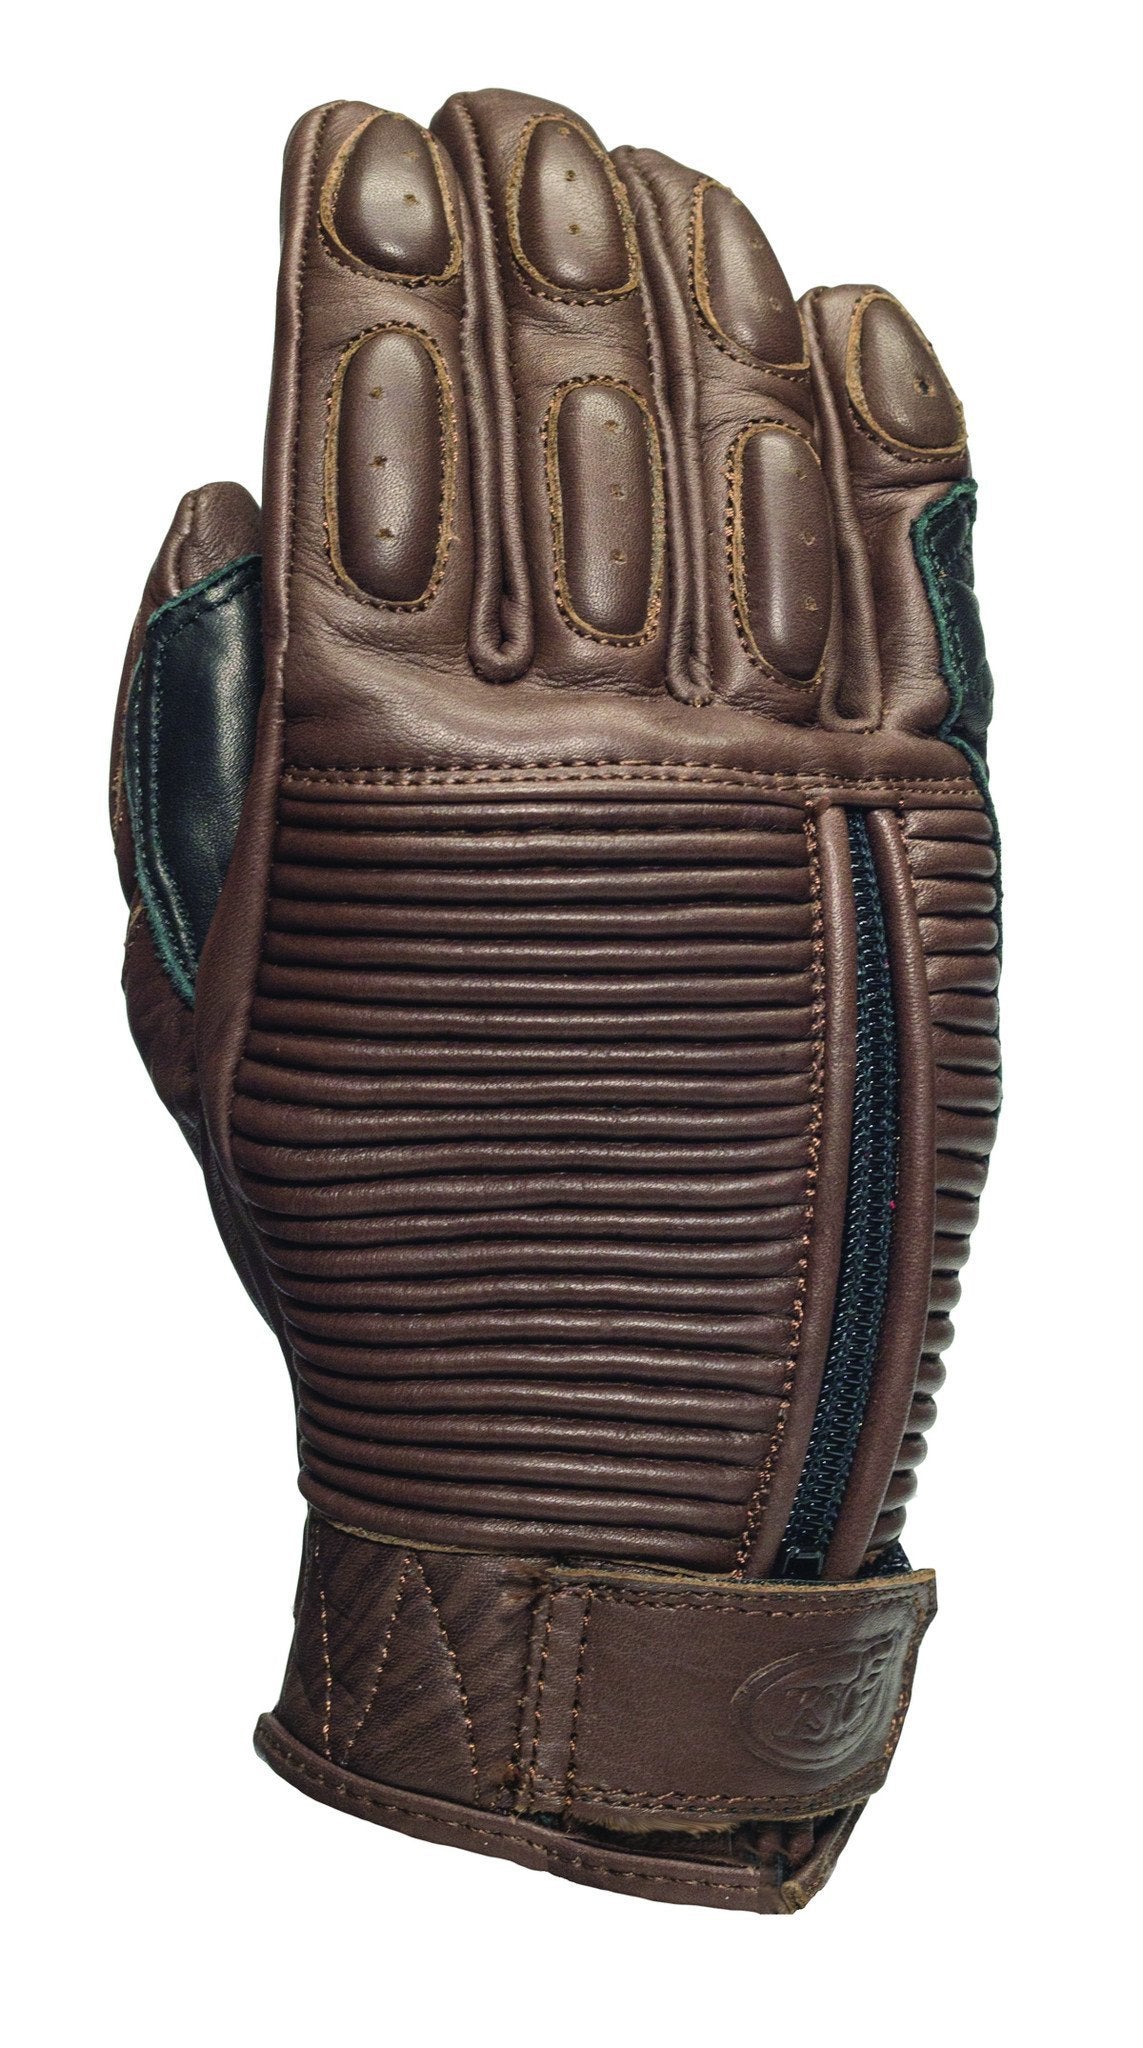 Roland Sands Design - Roland Sands Design Ladies Gezel Gloves - Tobacco - Gloves - Salt Flats Clothing